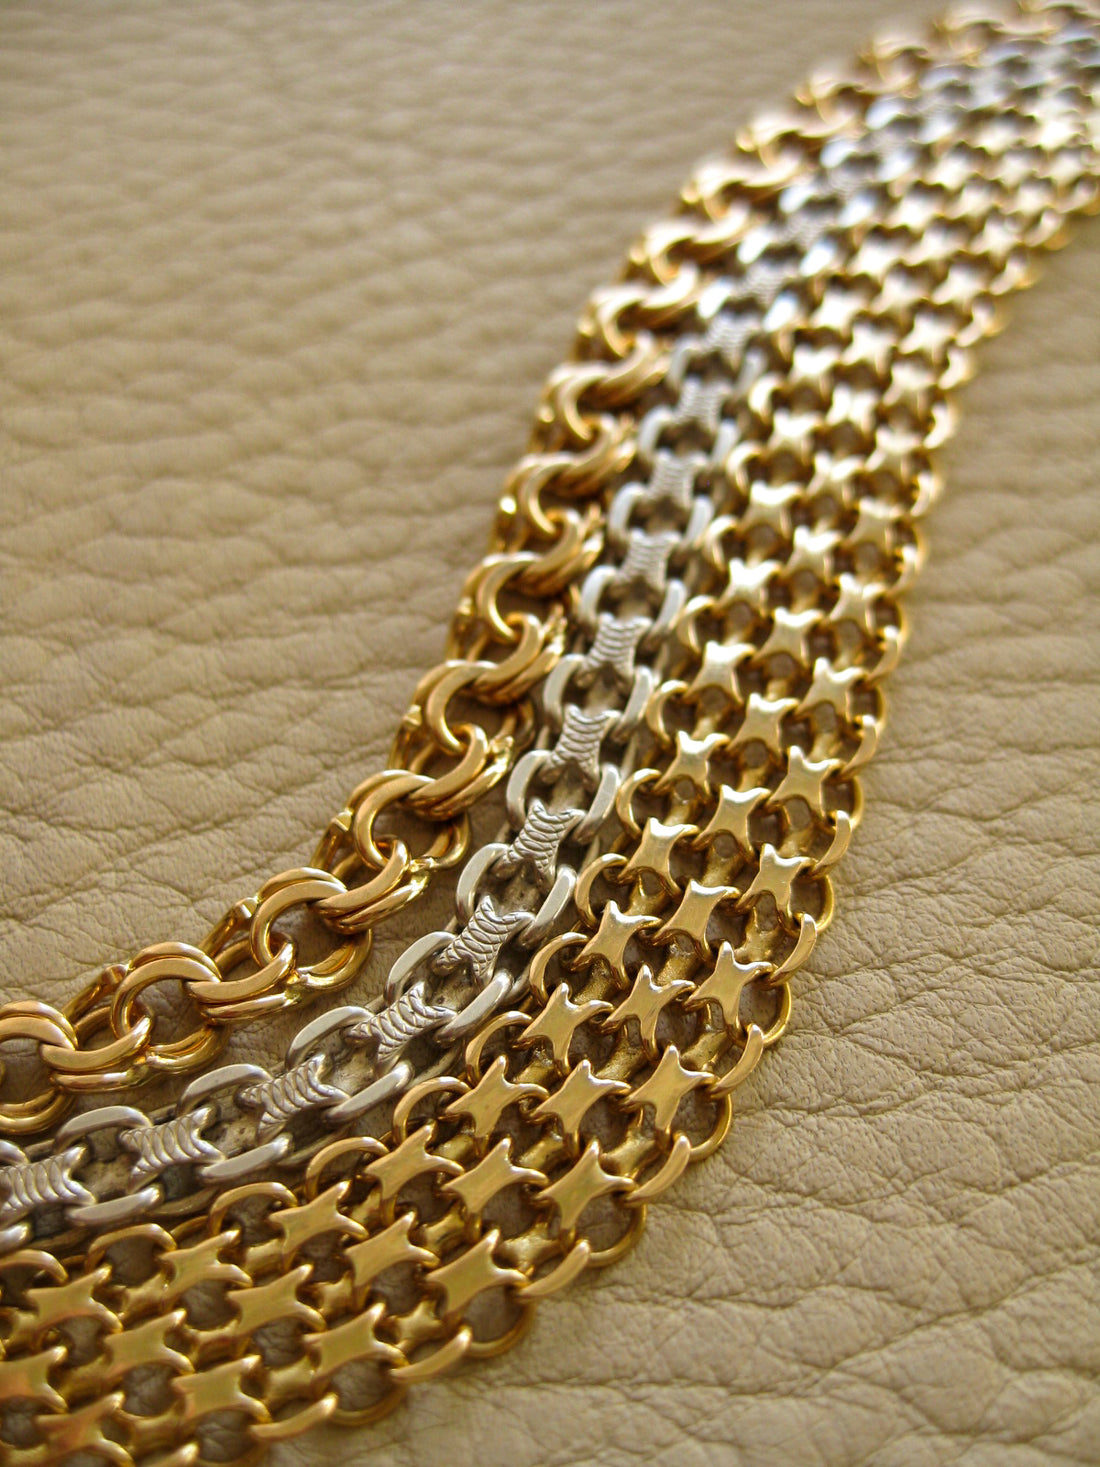 Beautiful 18k double-link solid gold bracelet - Stockholm, Sweden